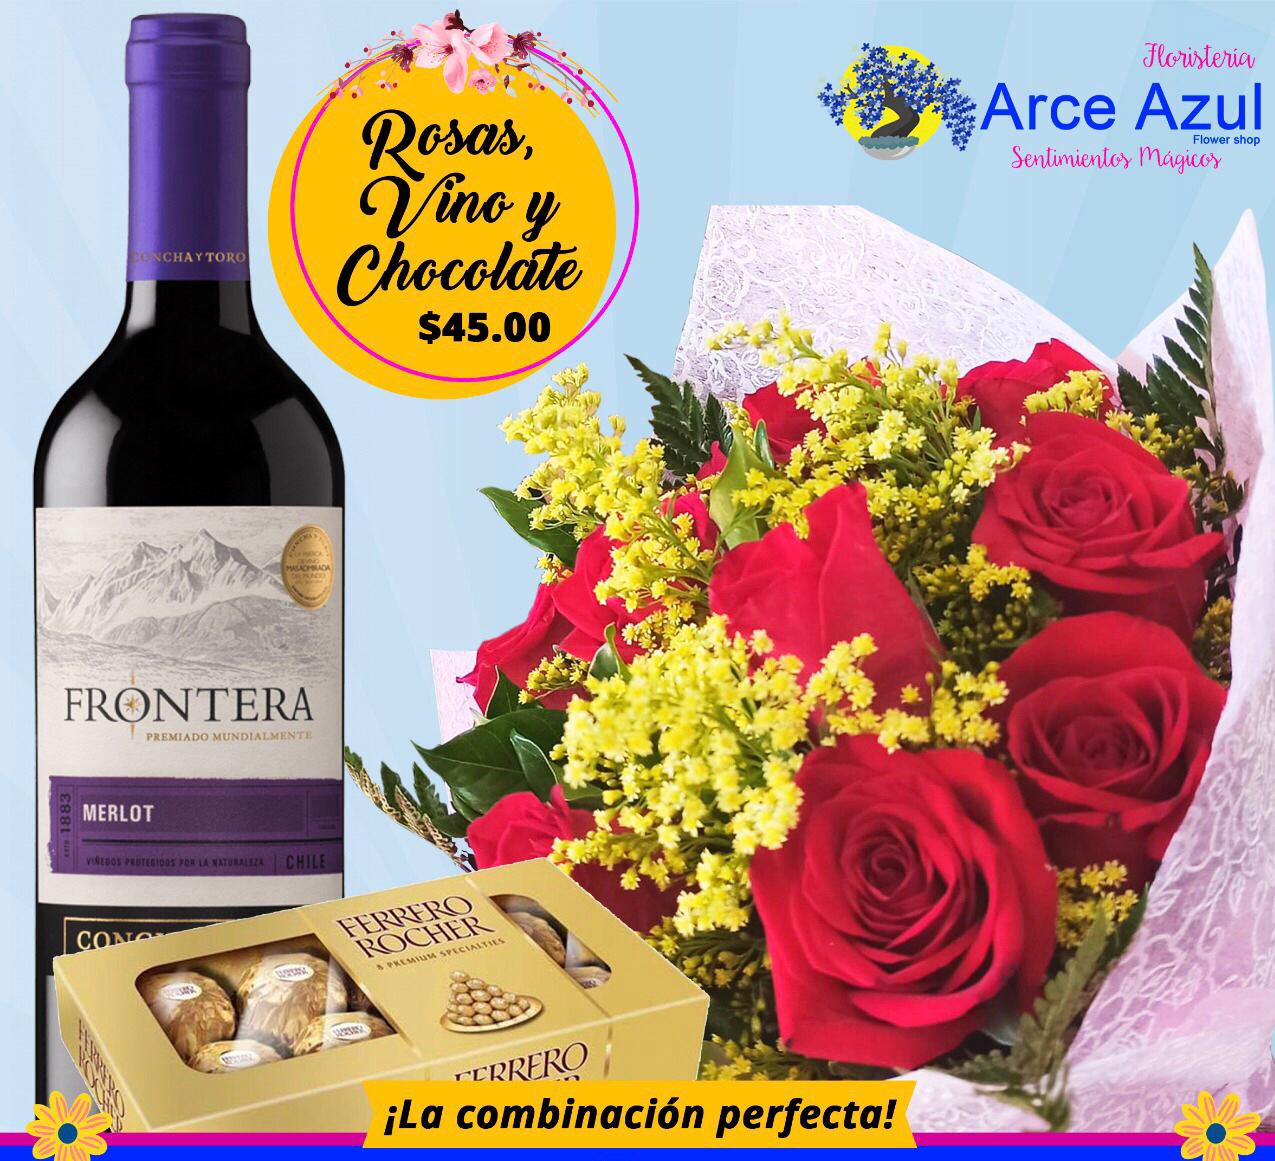 RA-009 Ramo de rosas rojas, chocolate y vino Frontera-Merlot – Arce Azul  Flower Shop